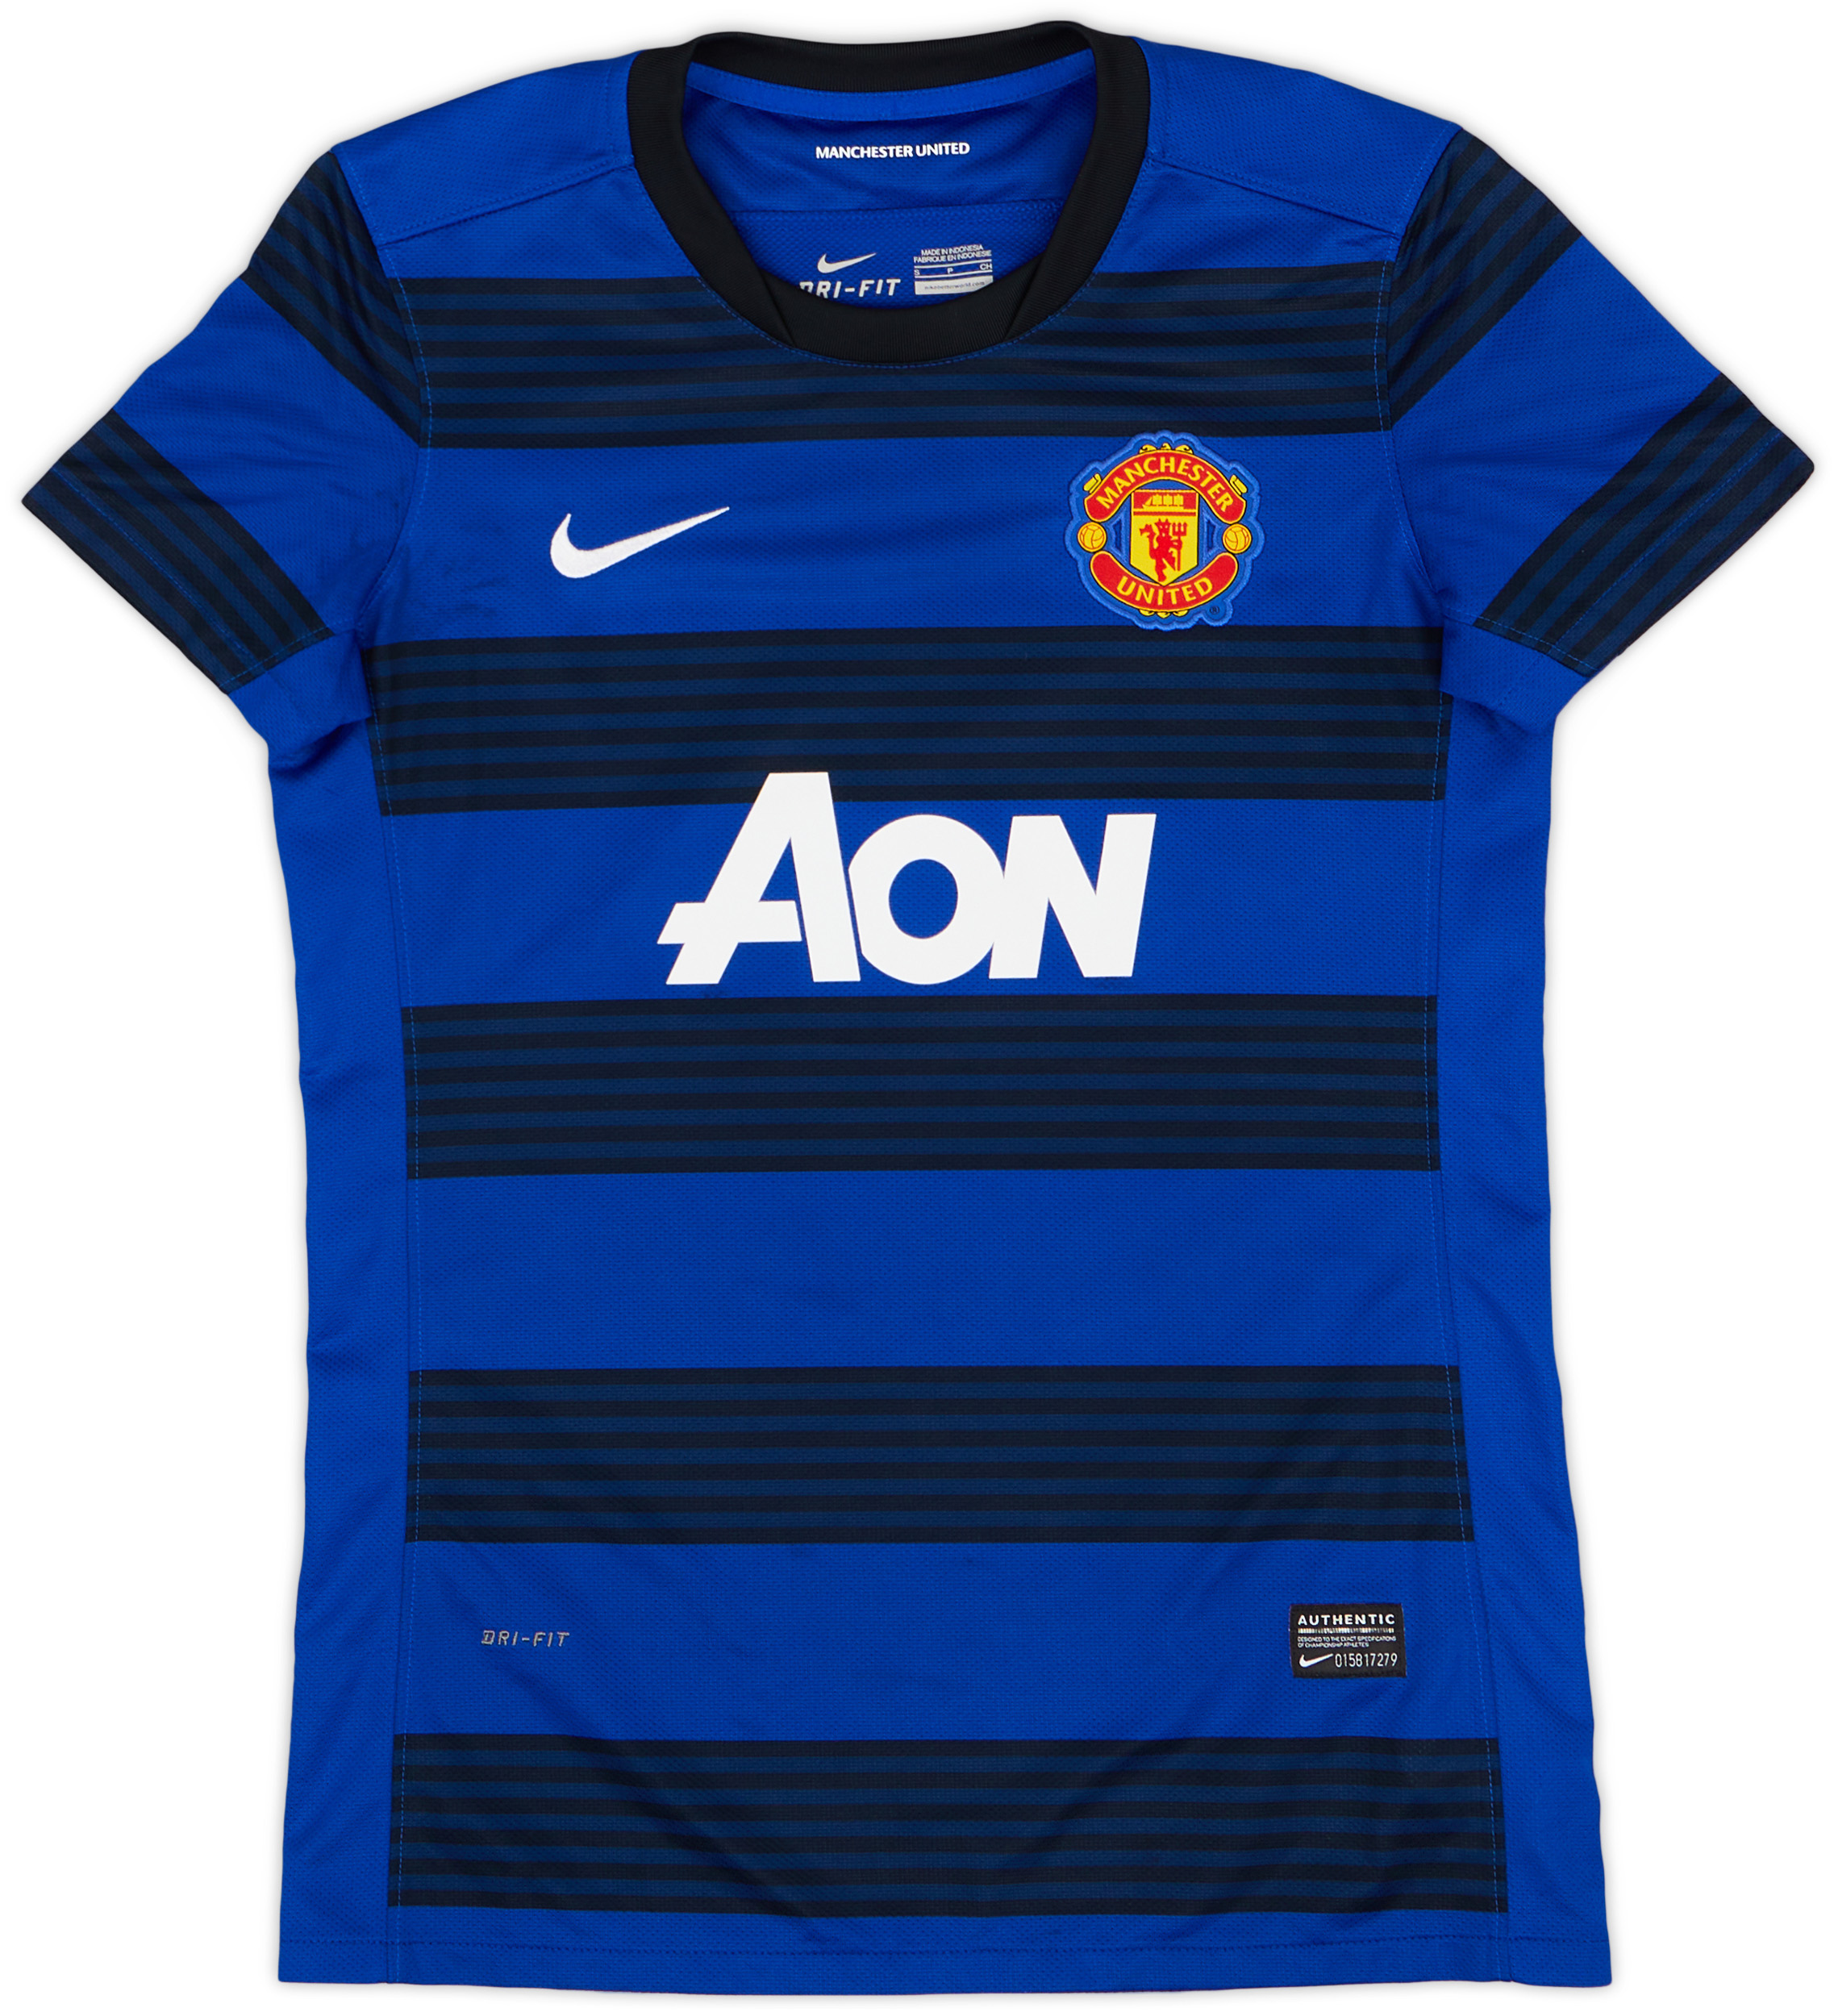 2011-13 Manchester United Away Shirt - 9/10 - (Women's )